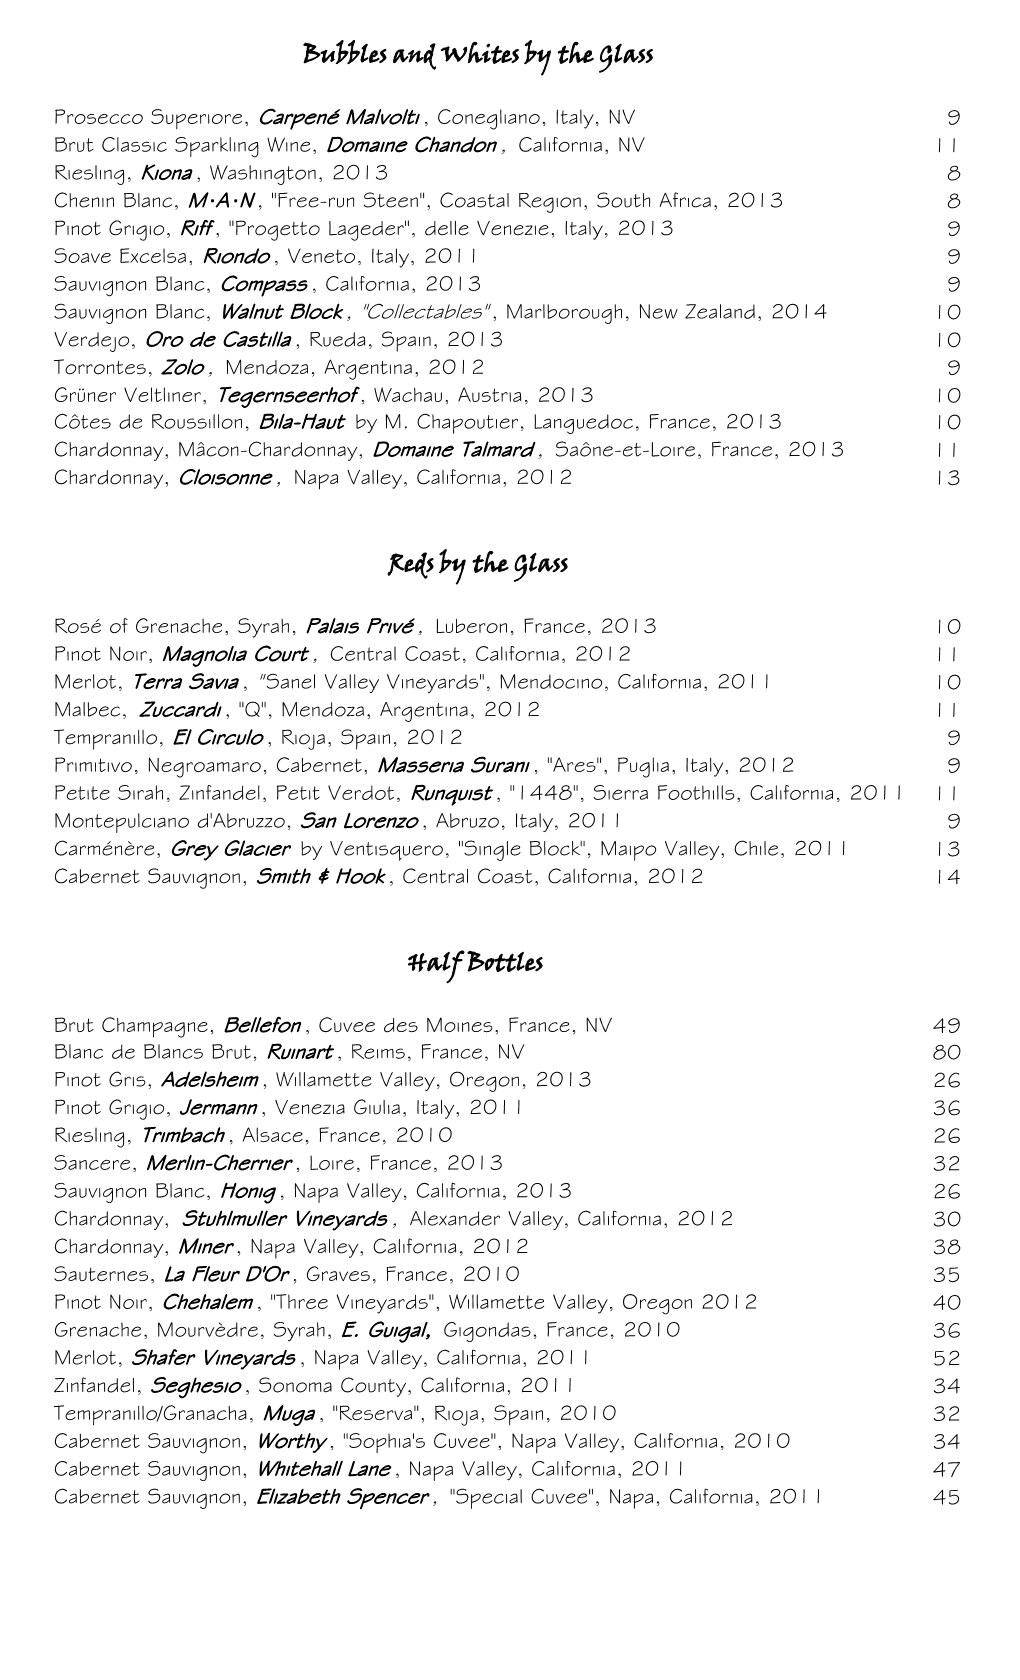 Sample Wine List